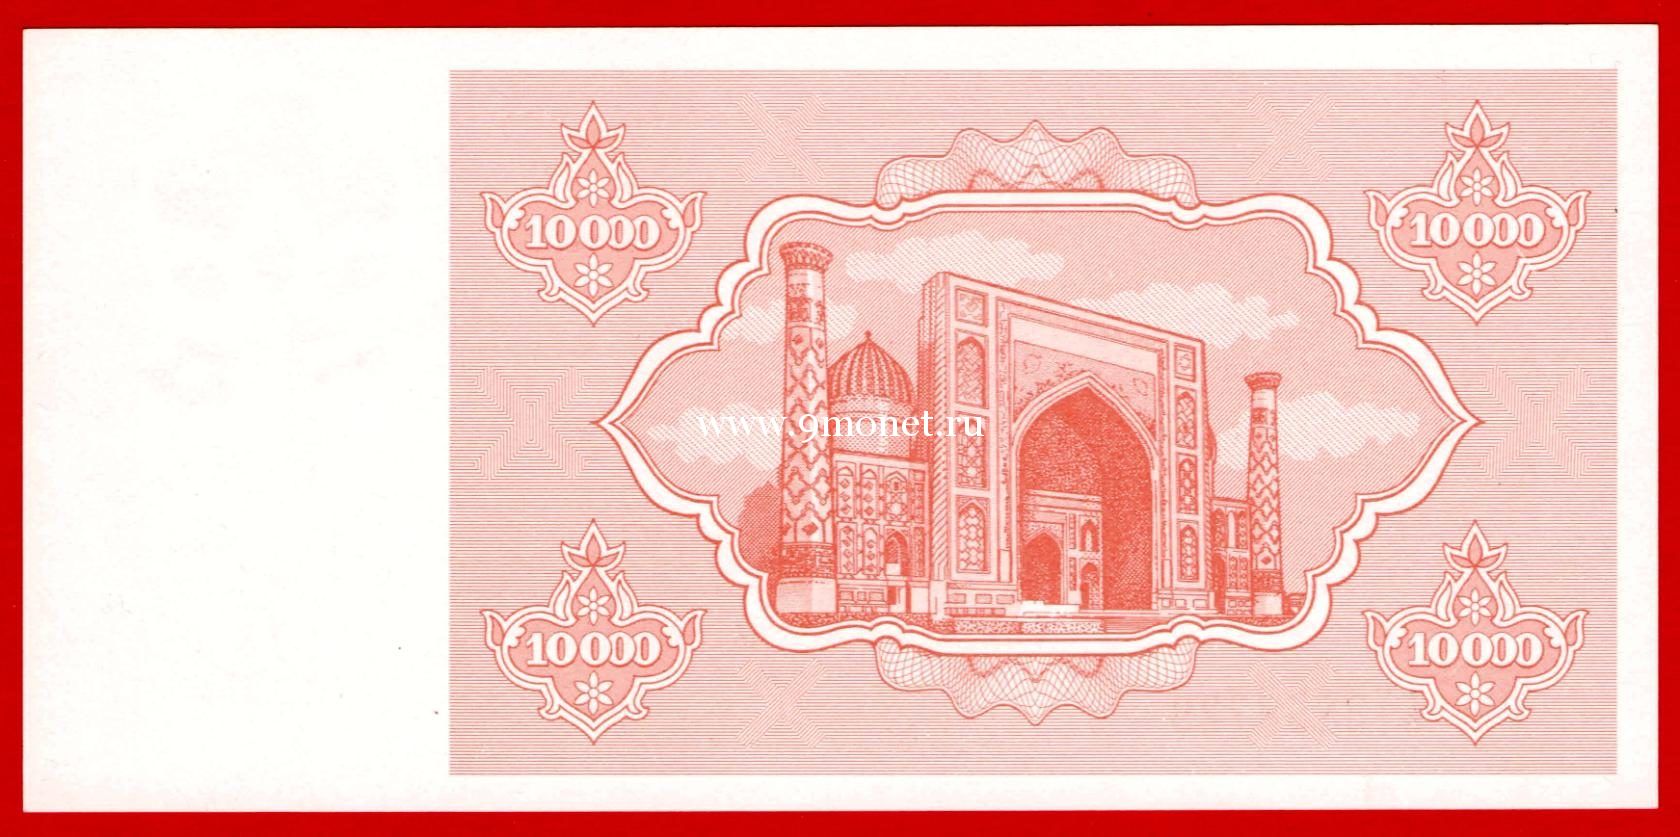 1992 год. Узбекистан. Банкнота 10000 сум.